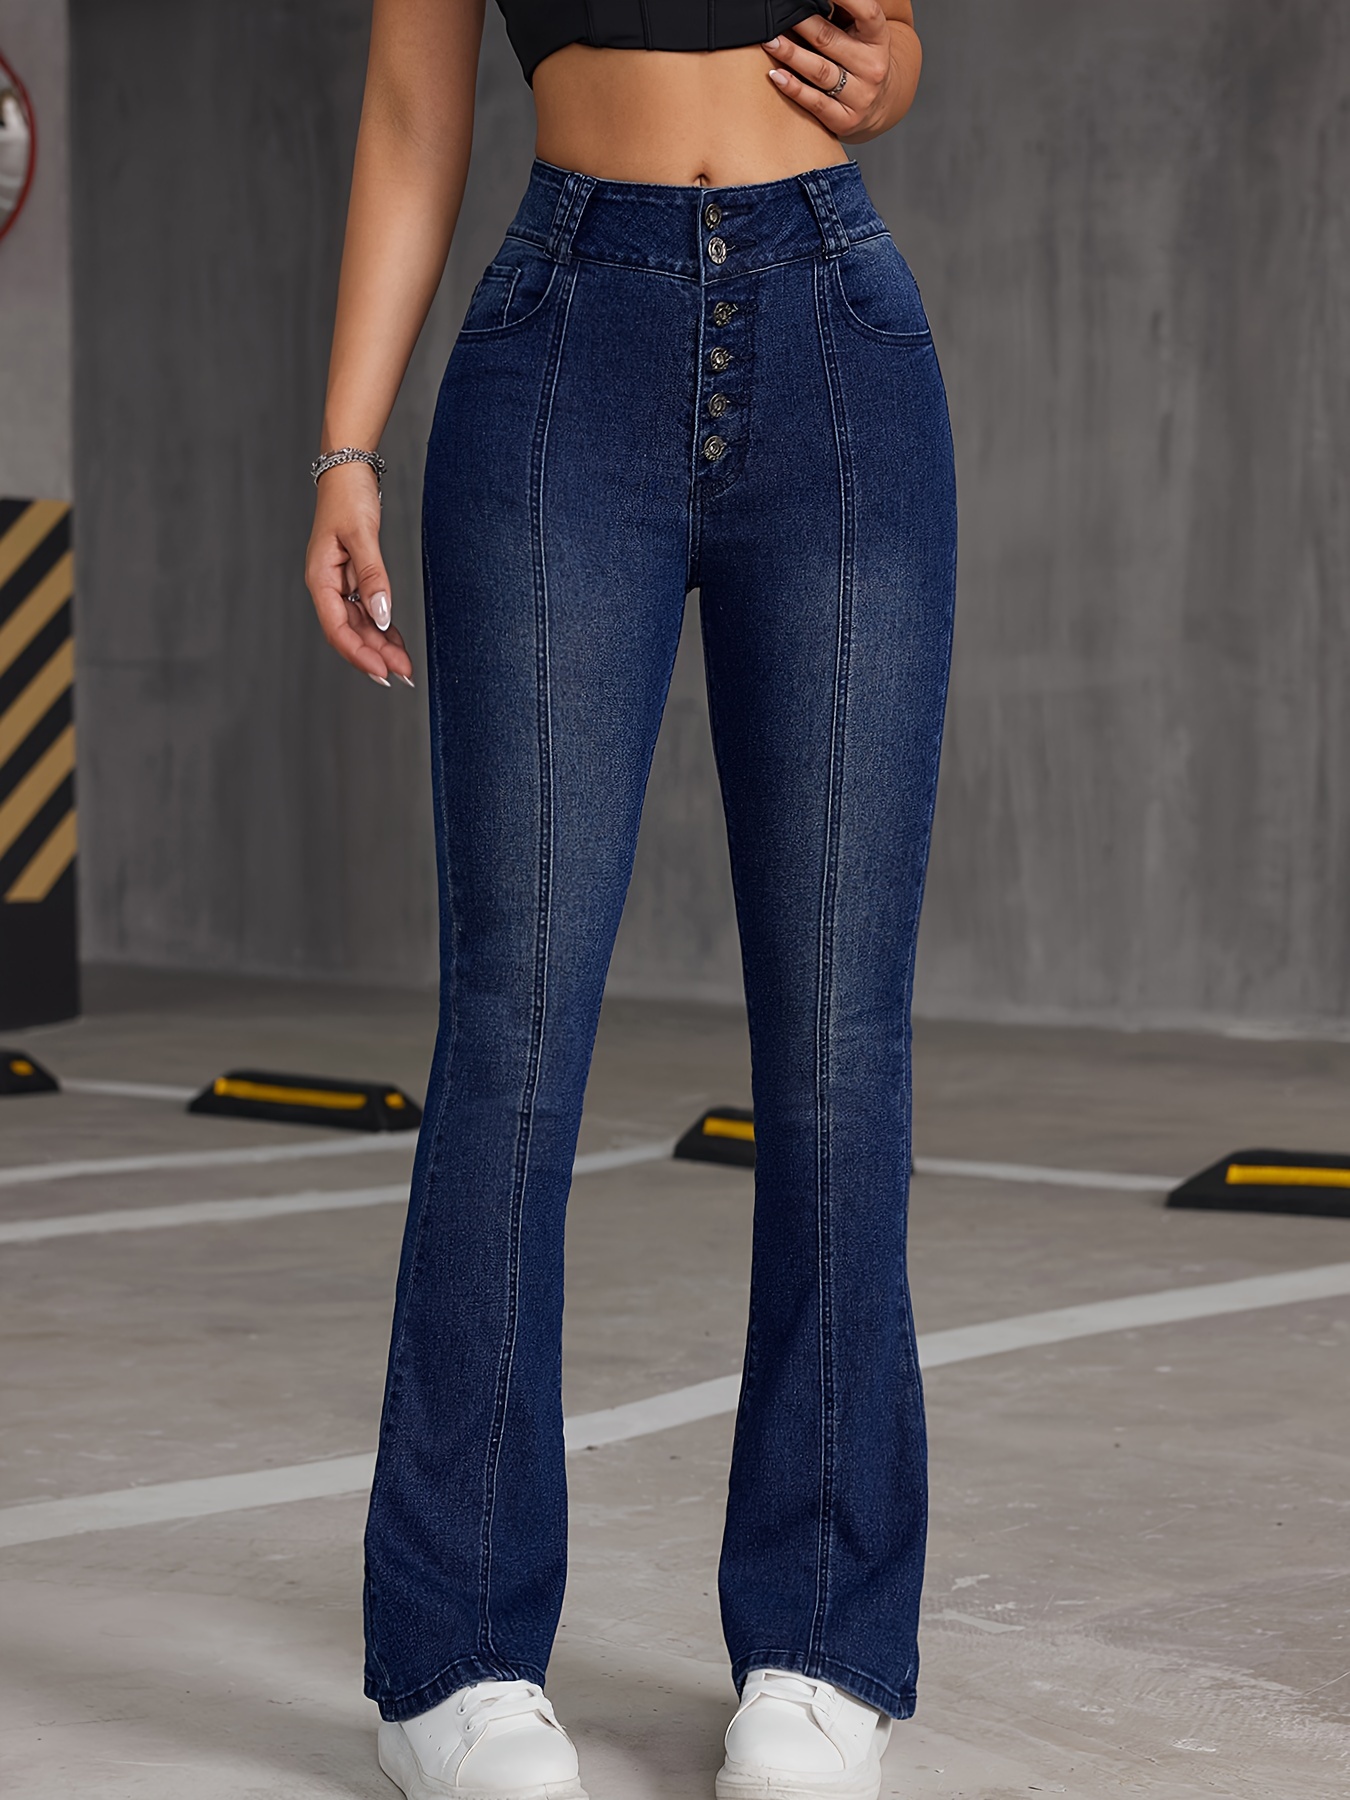 High-waist bootcut jeans - Women